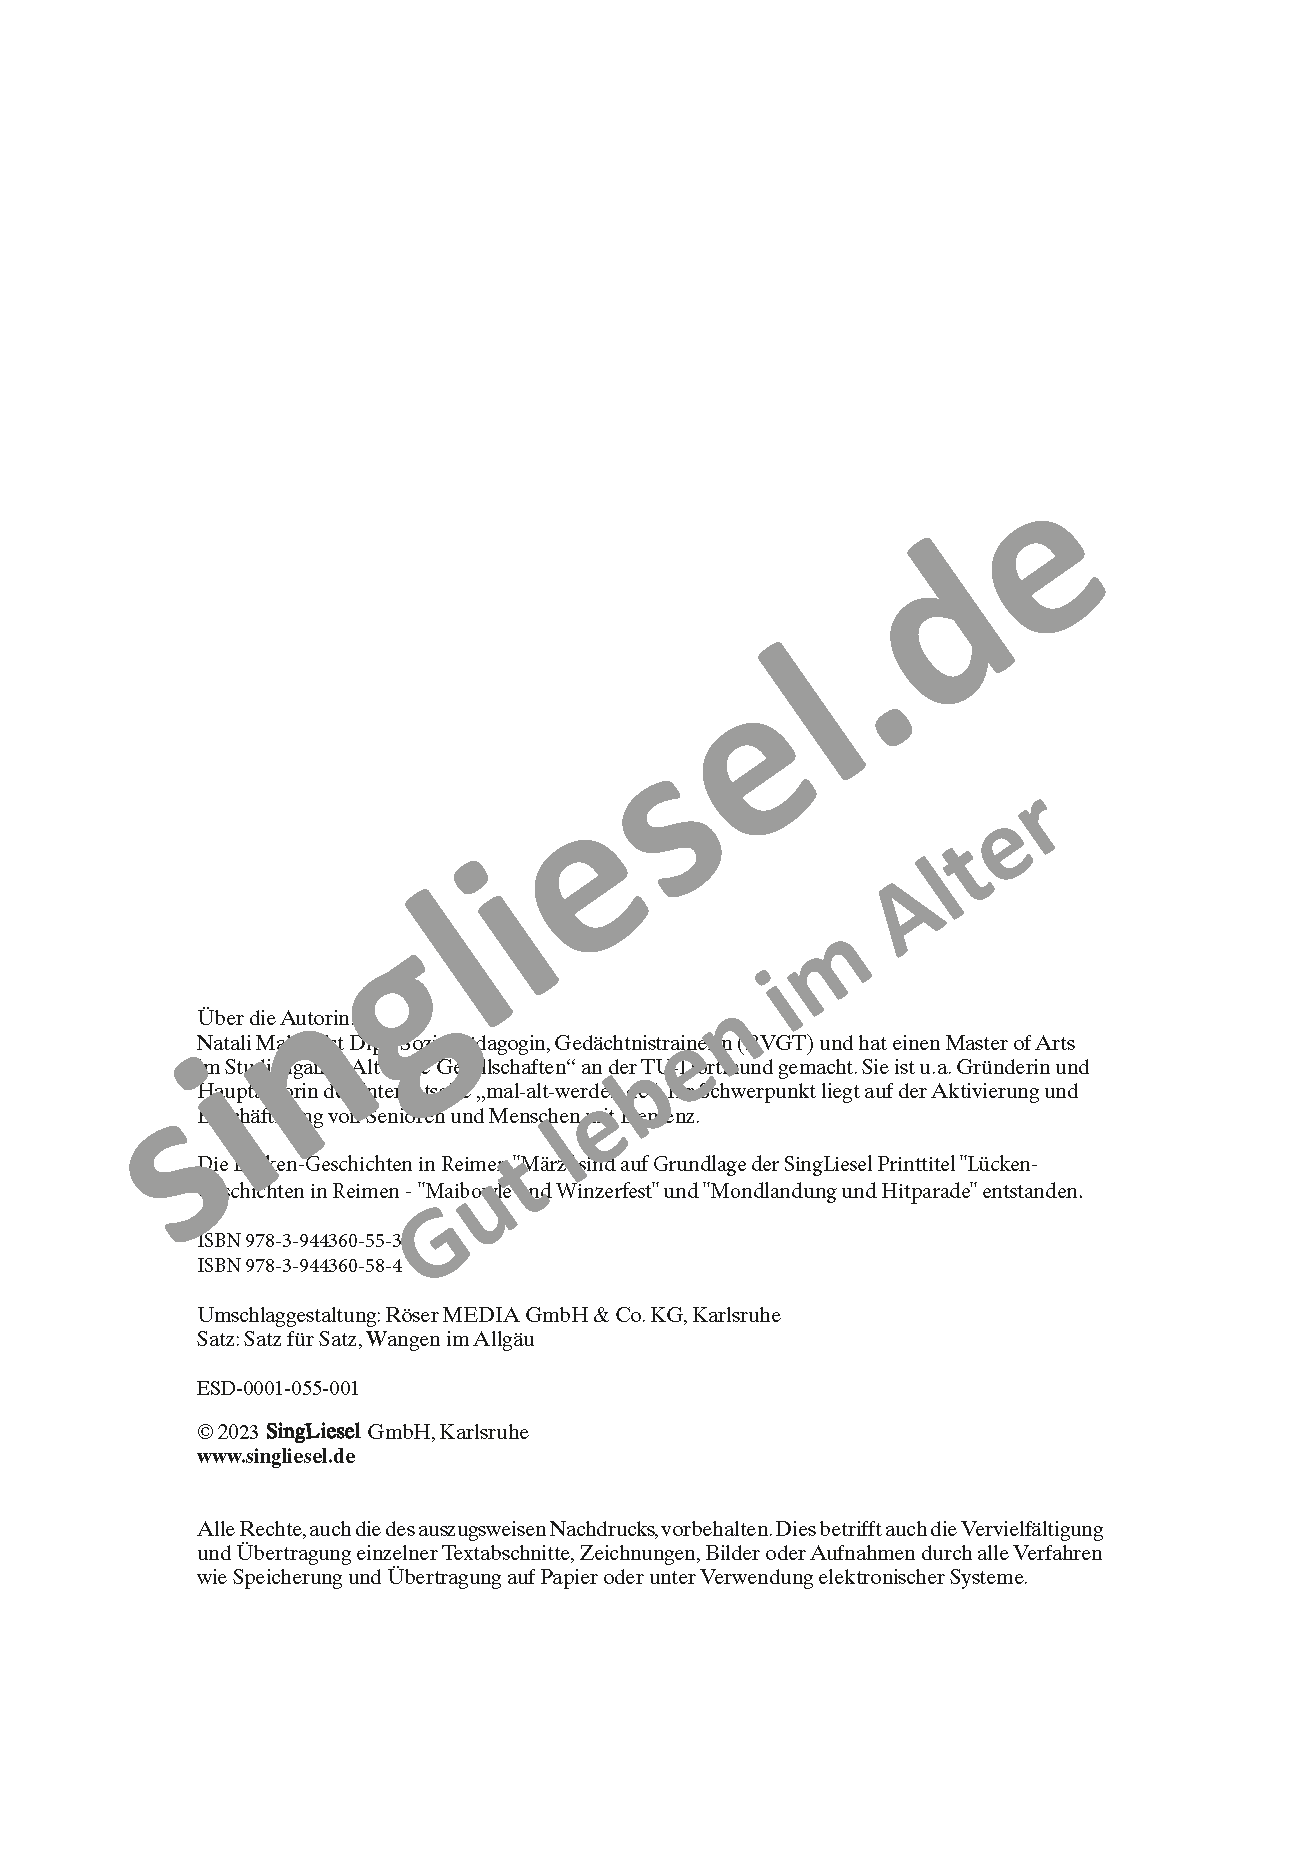 März - Lücken-Geschichten in Reimen. Sofort PDF Download. Singliesel Verlag